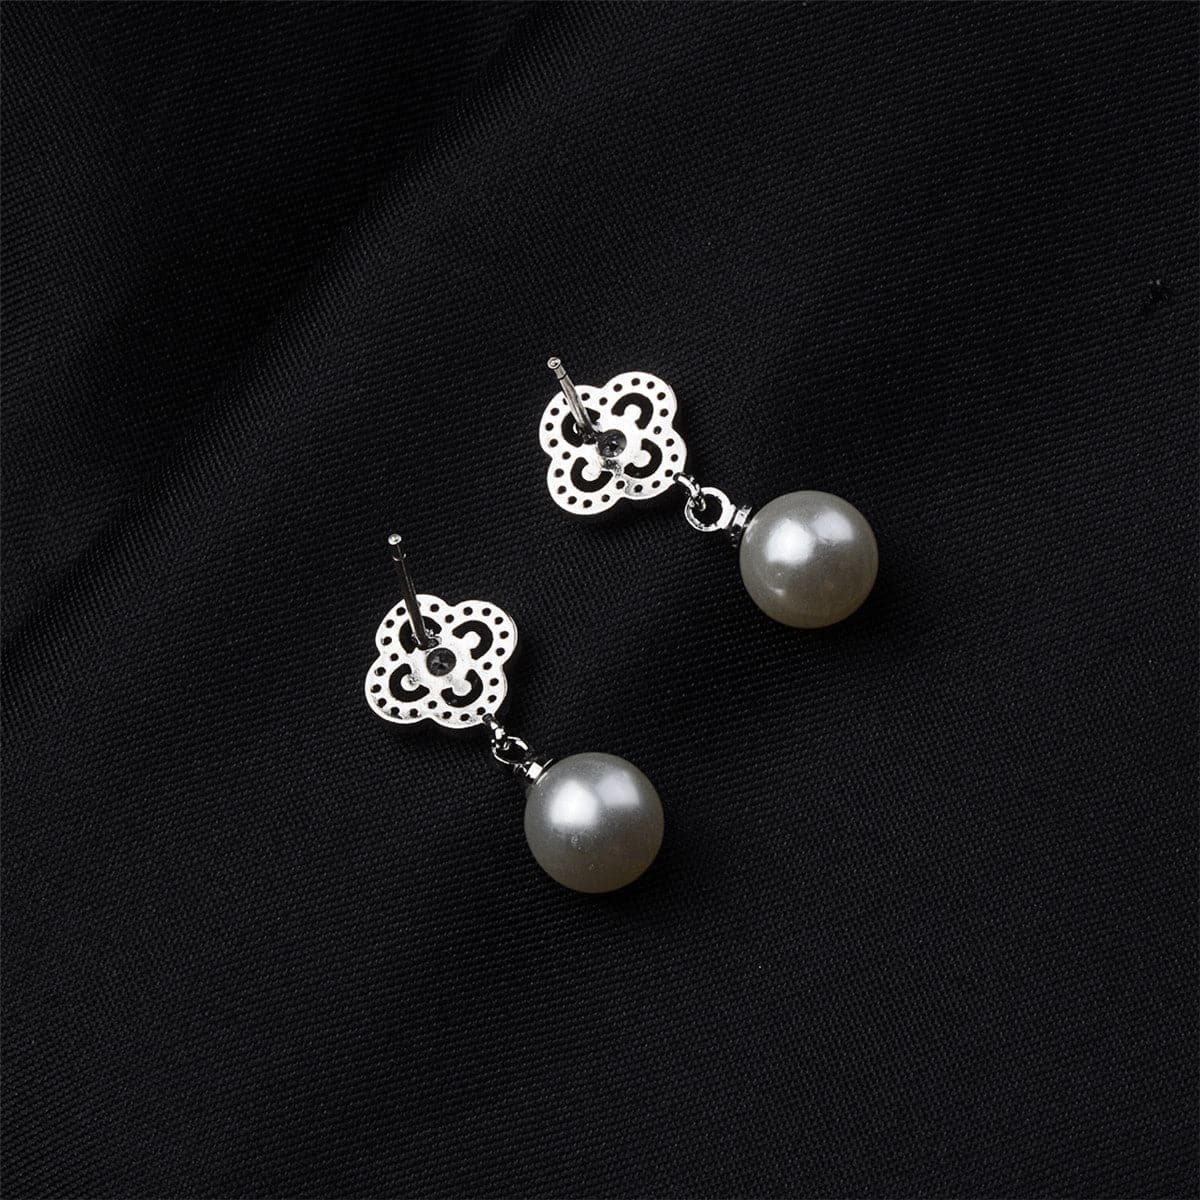 Pearl & Cubic Zirconia Silver-Plated Open Flower Drop Earrings